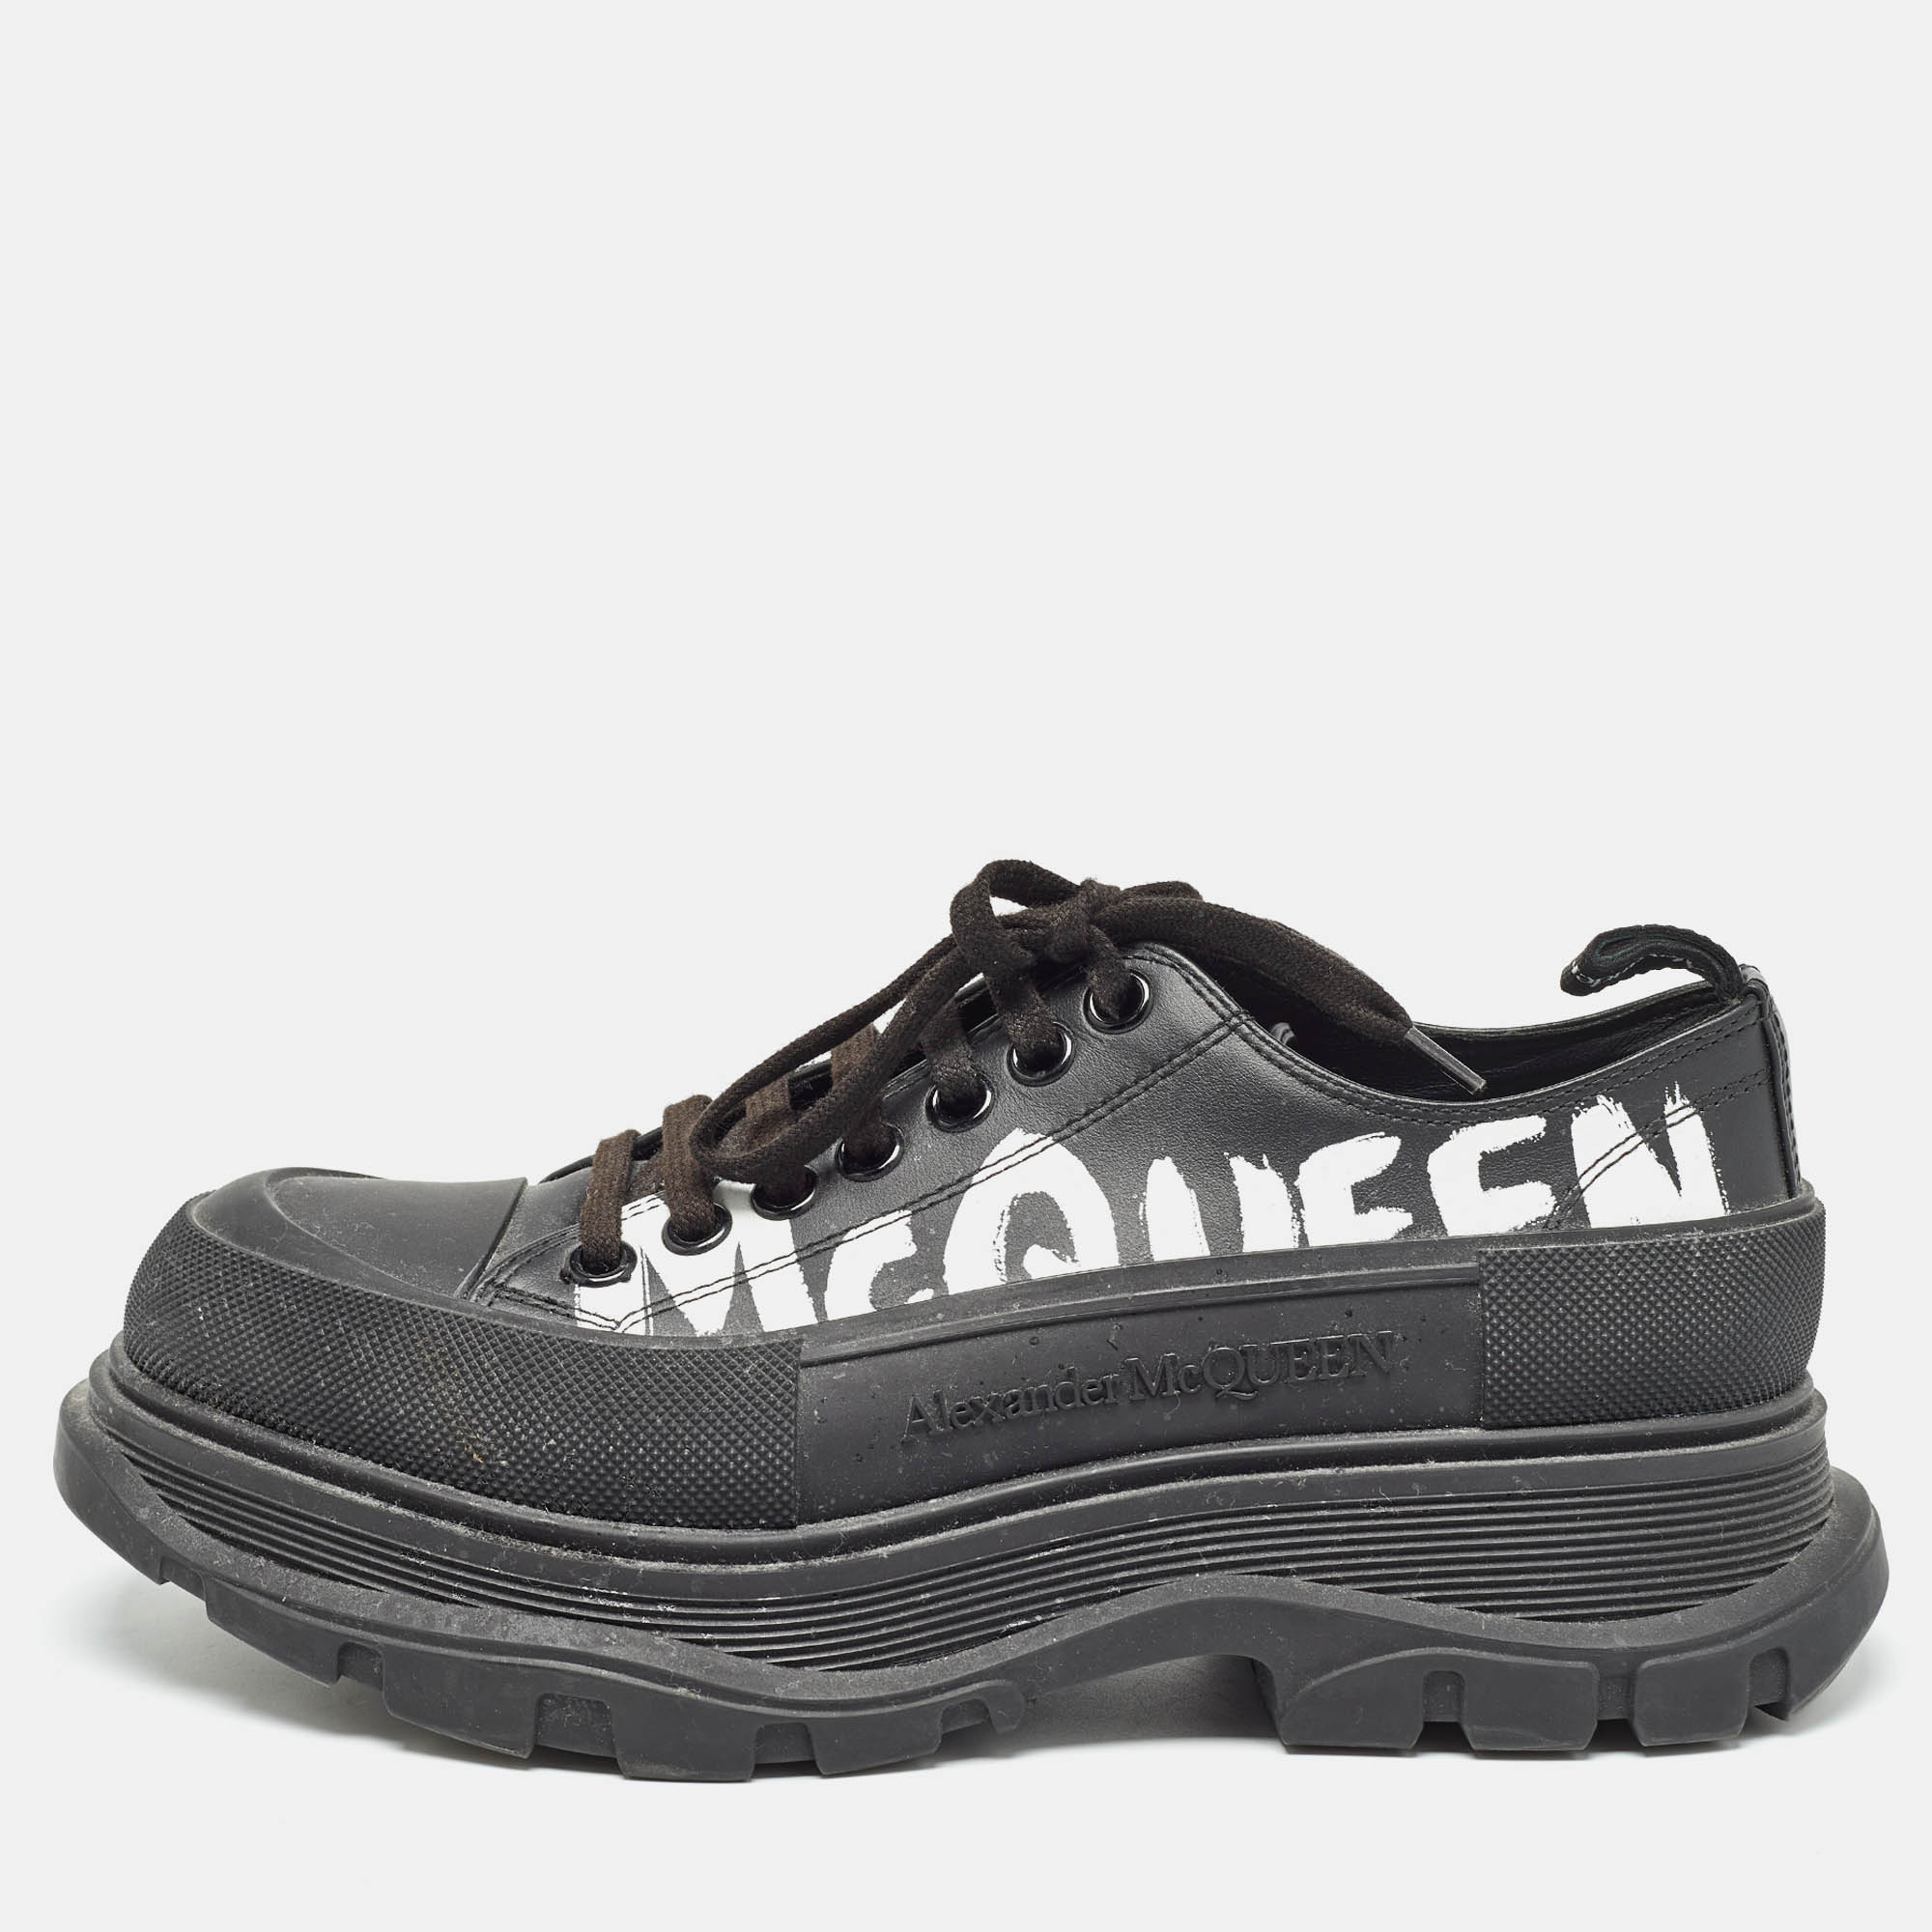 Alexander mcqueen black leather tread slick sneakers size 40